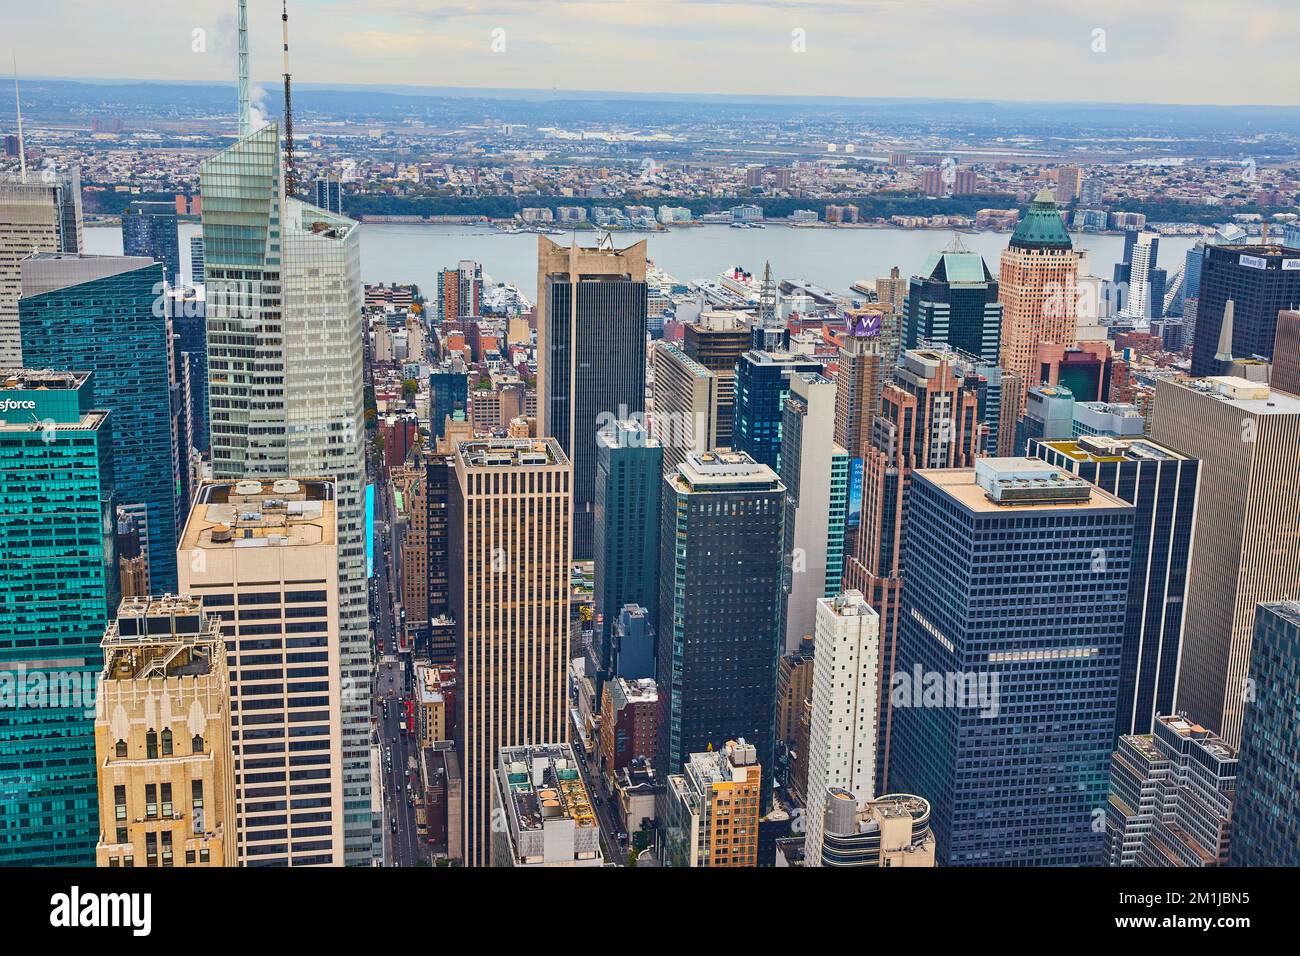 Vue panoramique sur la ville de New York au cœur de Manhattan, plein de gratte-ciel Banque D'Images